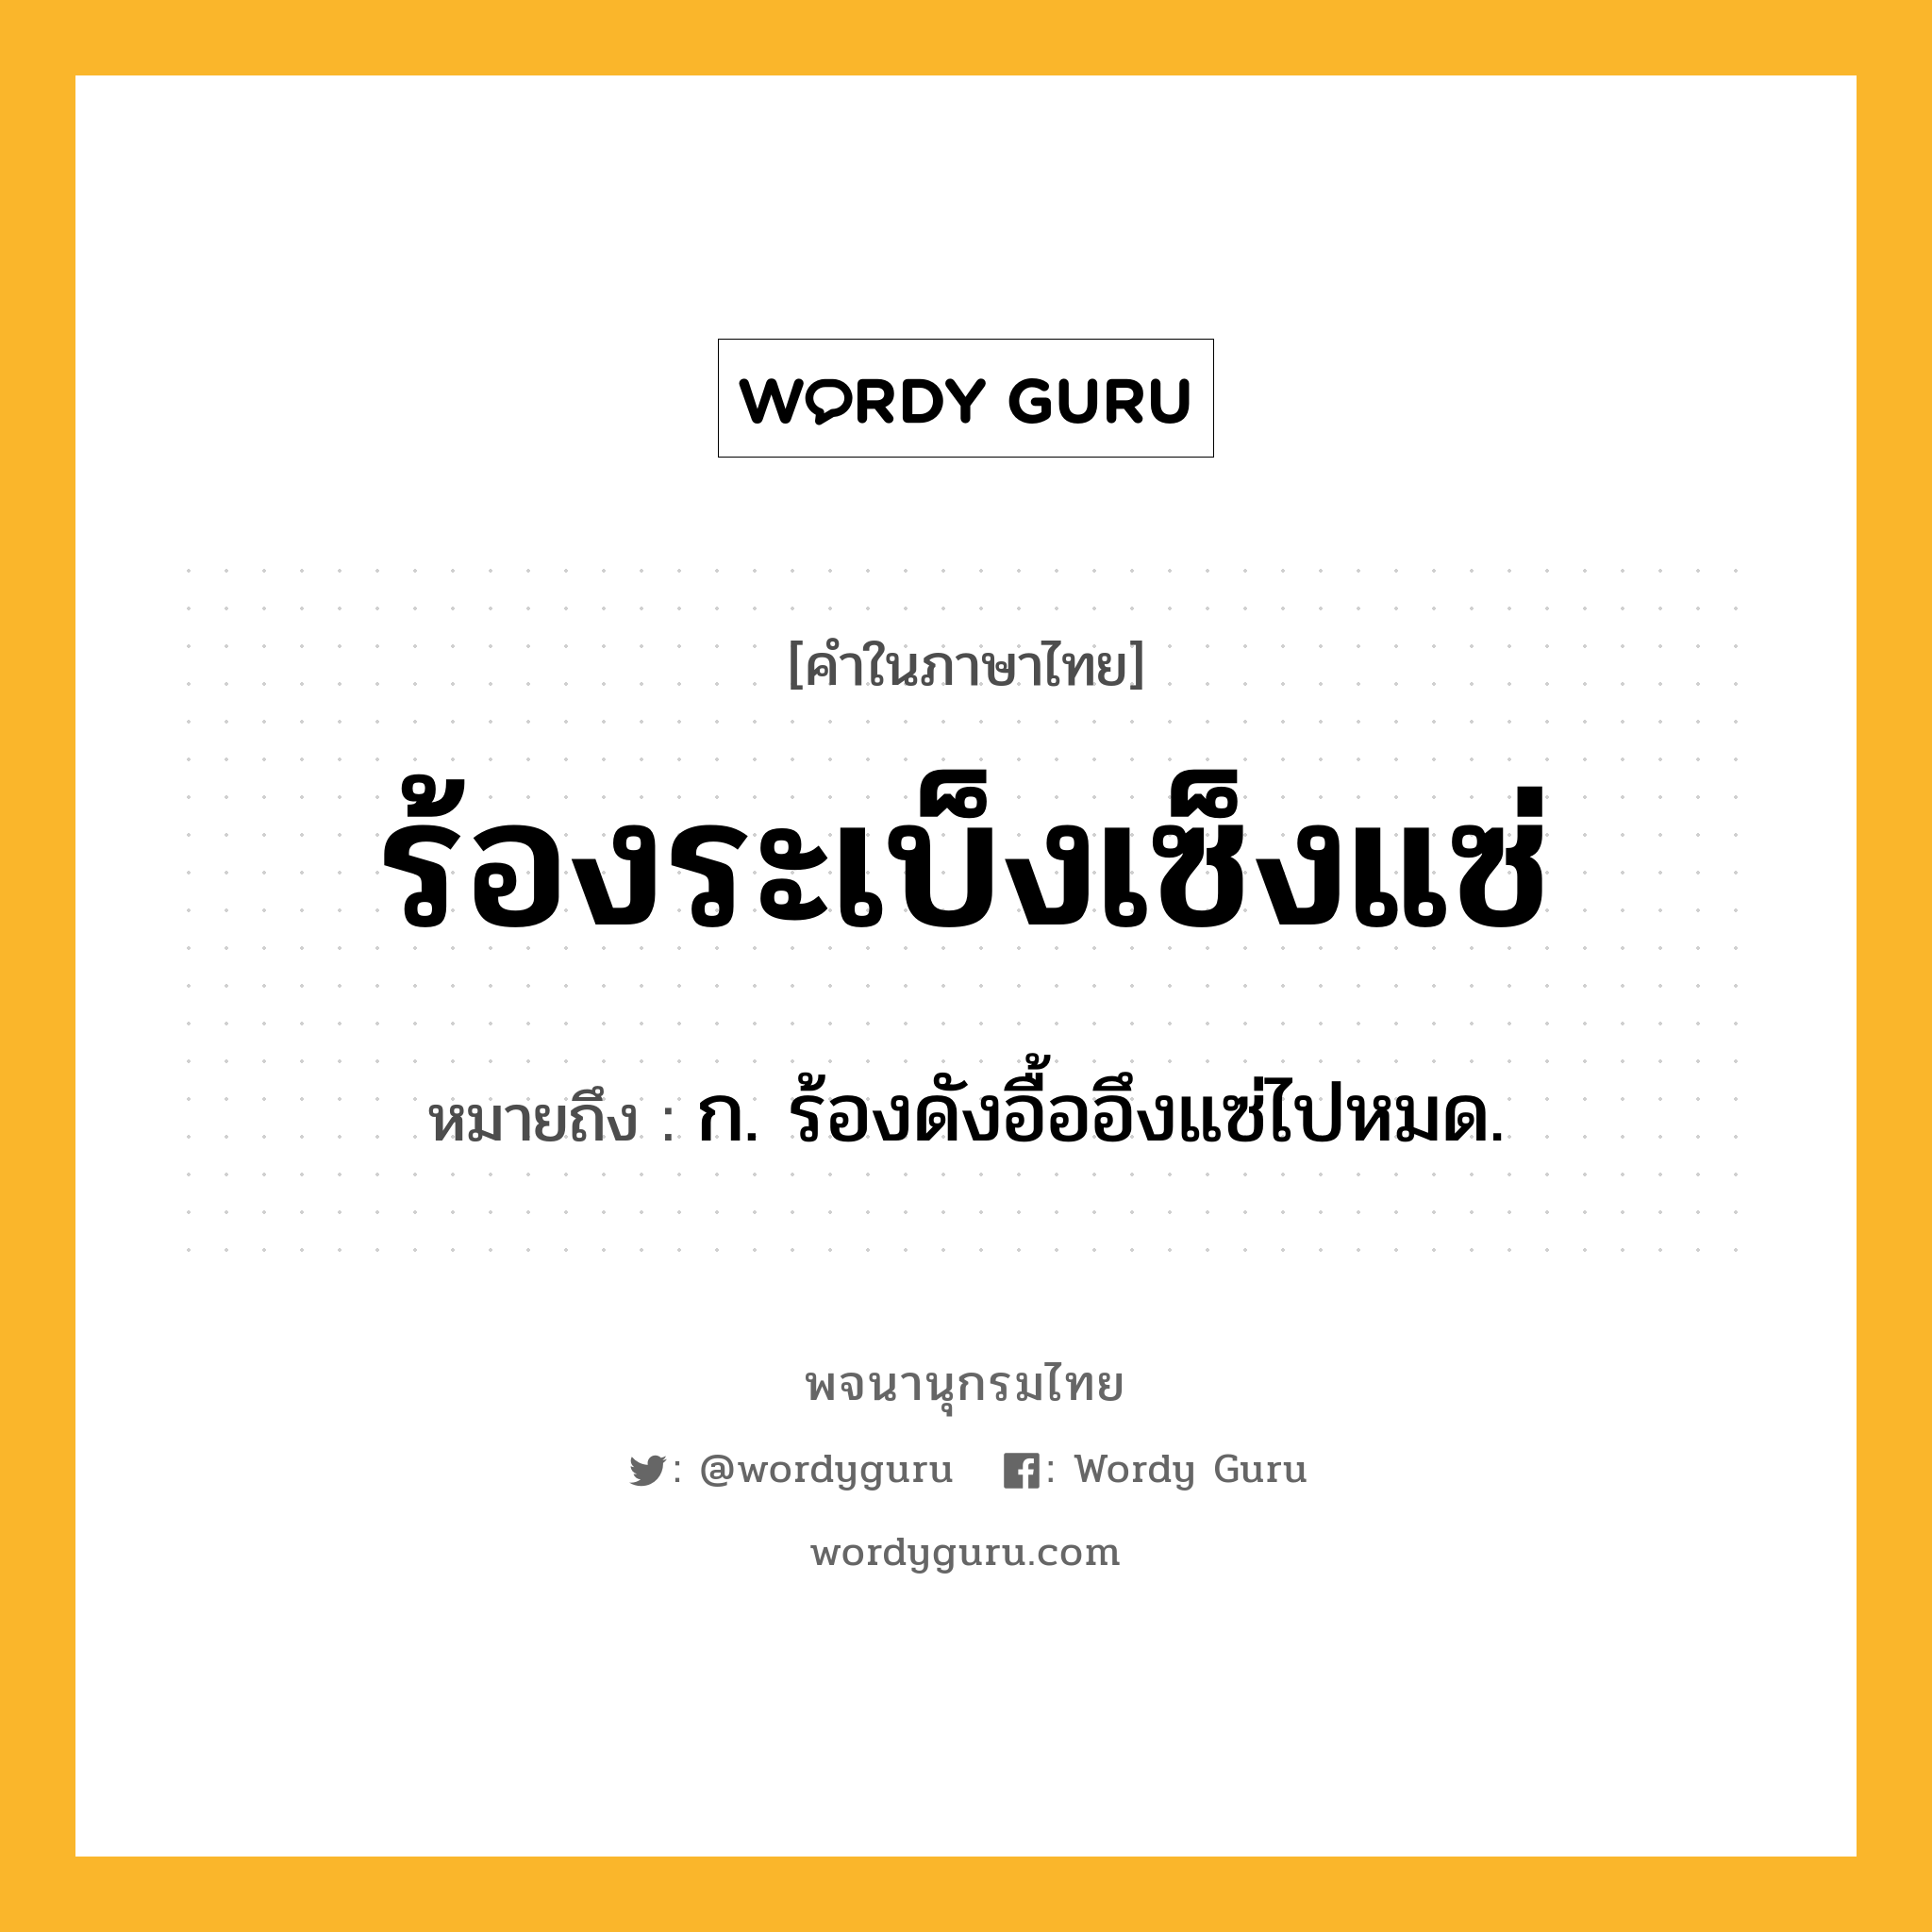 ร้องระเบ็งเซ็งแซ่ ความหมาย หมายถึงอะไร?, คำในภาษาไทย ร้องระเบ็งเซ็งแซ่ หมายถึง ก. ร้องดังอื้ออึงแซ่ไปหมด.